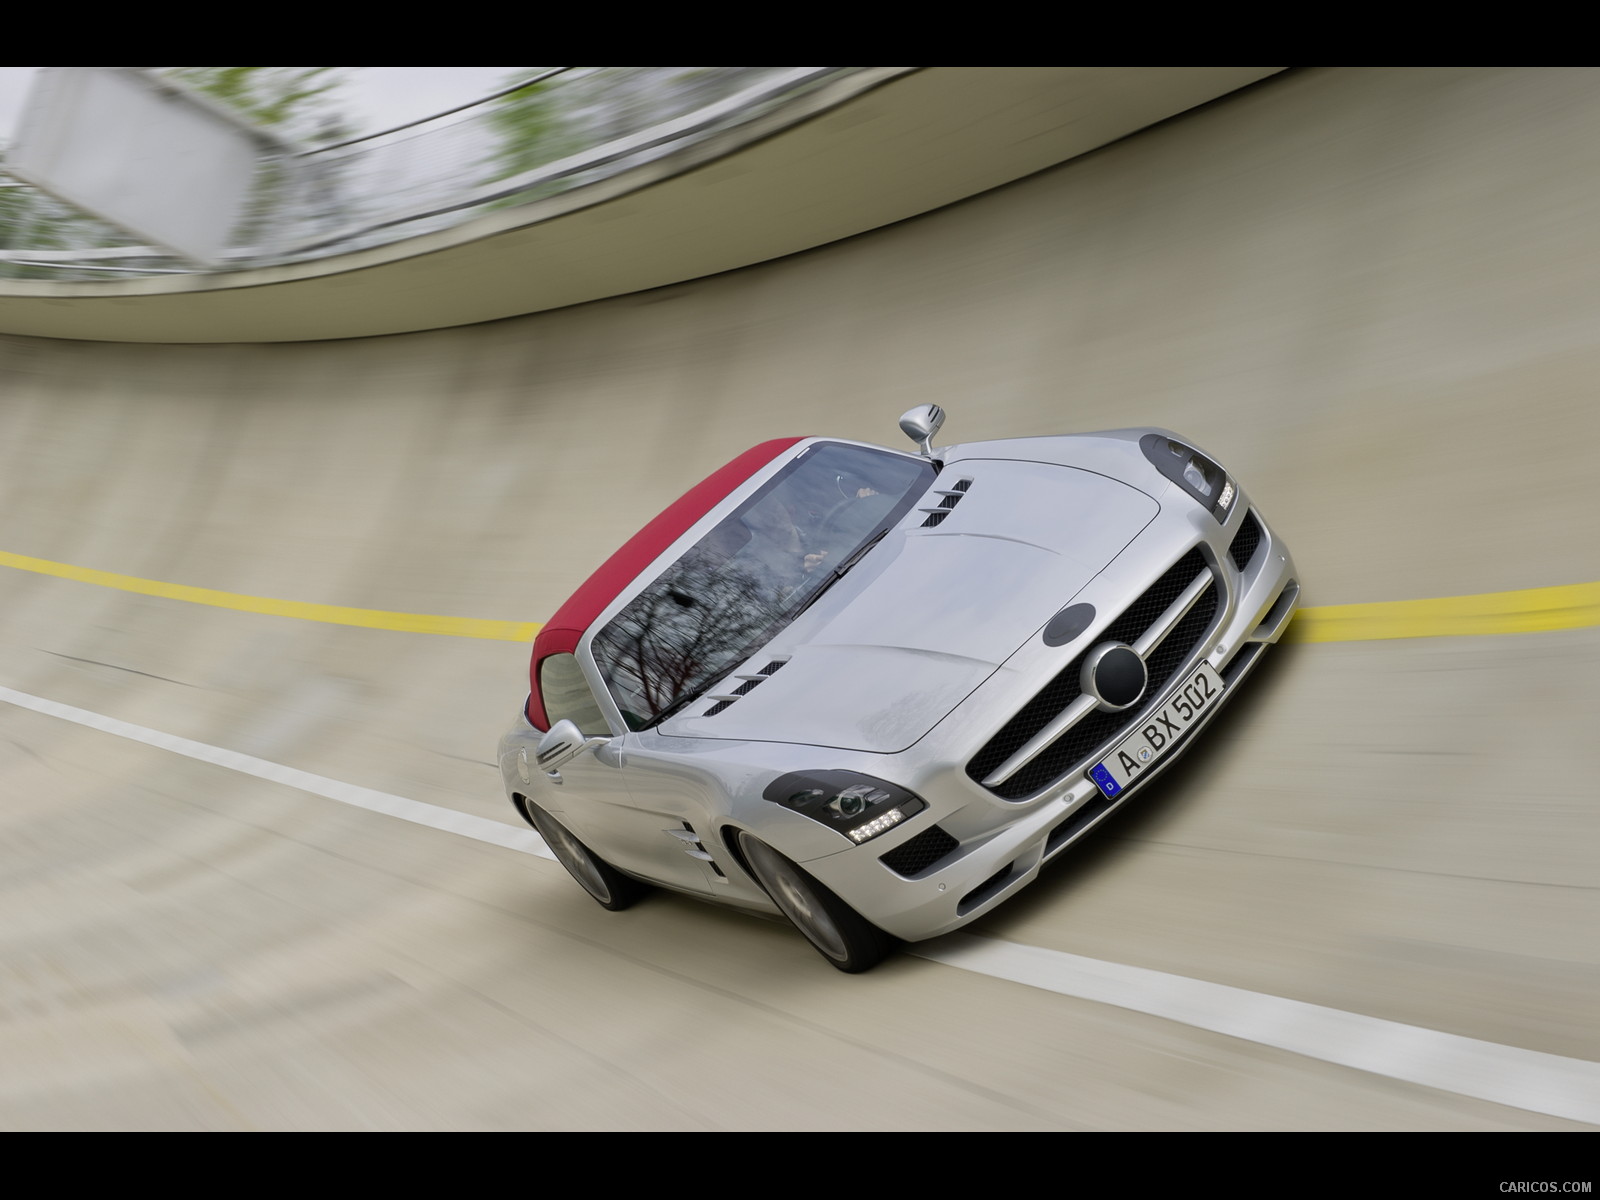 2012 Mercedes-Benz SLS AMG Roadster - Test track - , #117 of 129